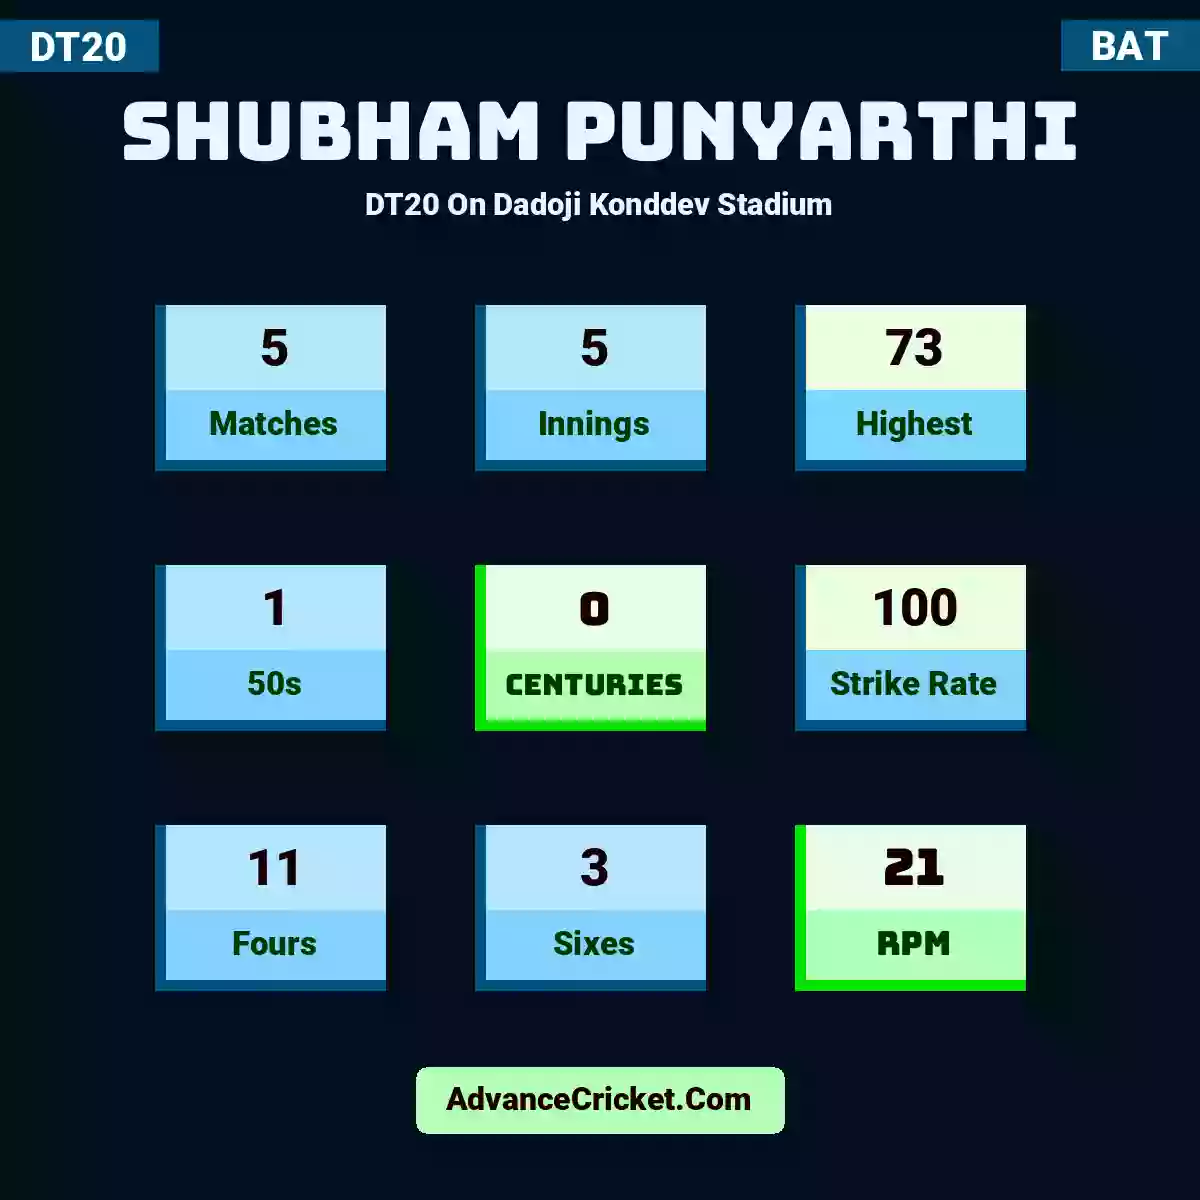 Shubham Punyarthi DT20  On Dadoji Konddev Stadium, Shubham Punyarthi played 5 matches, scored 73 runs as highest, 1 half-centuries, and 0 centuries, with a strike rate of 100. S.Punyarthi hit 11 fours and 3 sixes, with an RPM of 21.